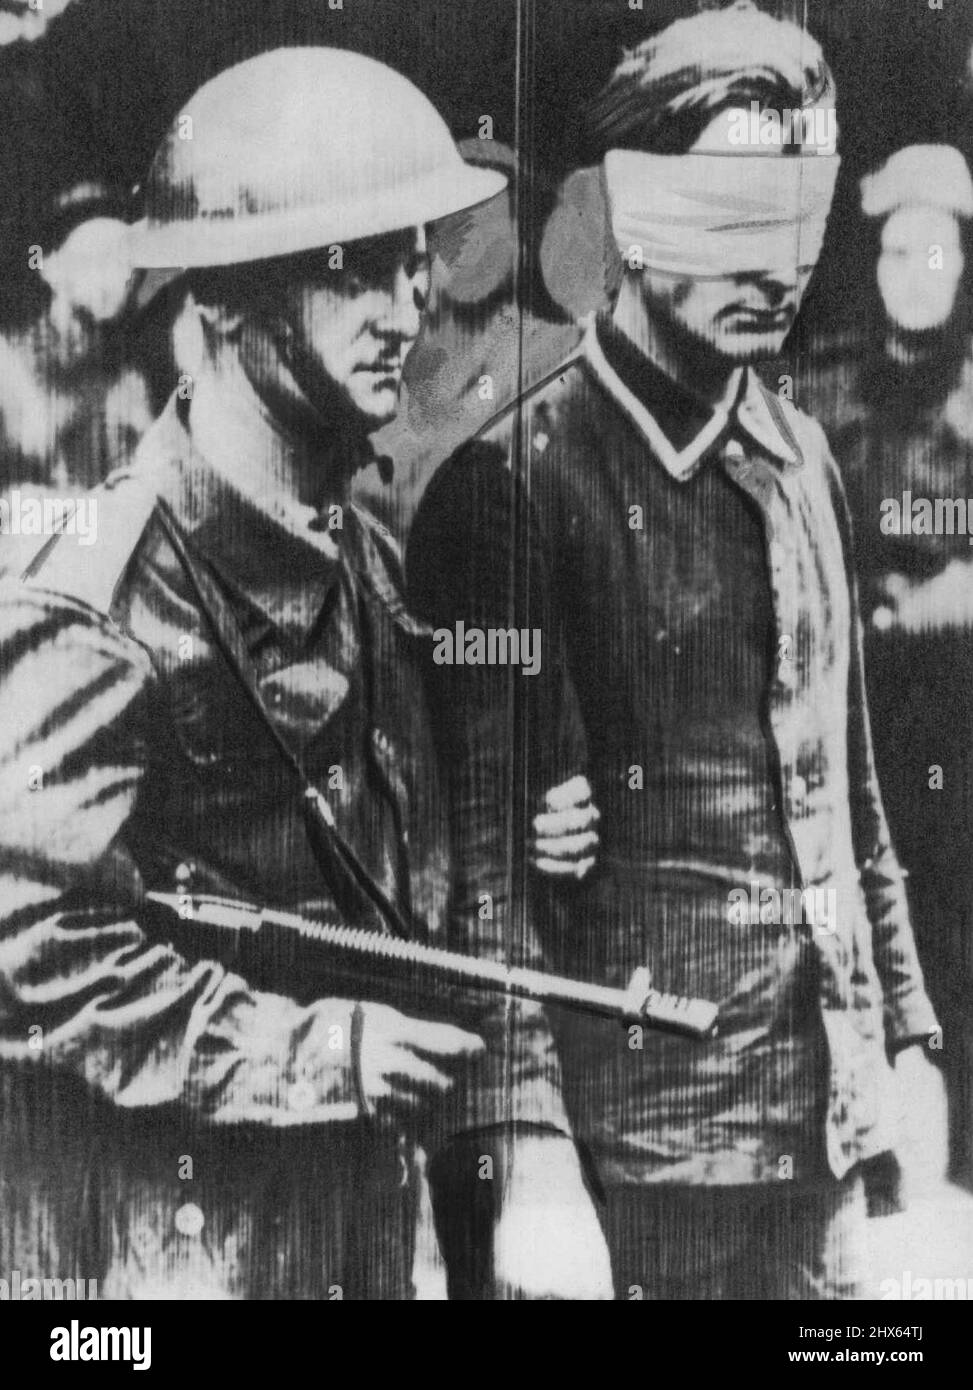 Commando ritorna con prigioniero -- Torna in Gran Bretagna dopo la grande incursione del Commando su Dieppe in Francia occupata dalla Germania, questo Commando guida un prigioniero tedesco ripiegato alla cieca. 20 agosto 1942 (Foto di AP Wirephoto). Foto Stock